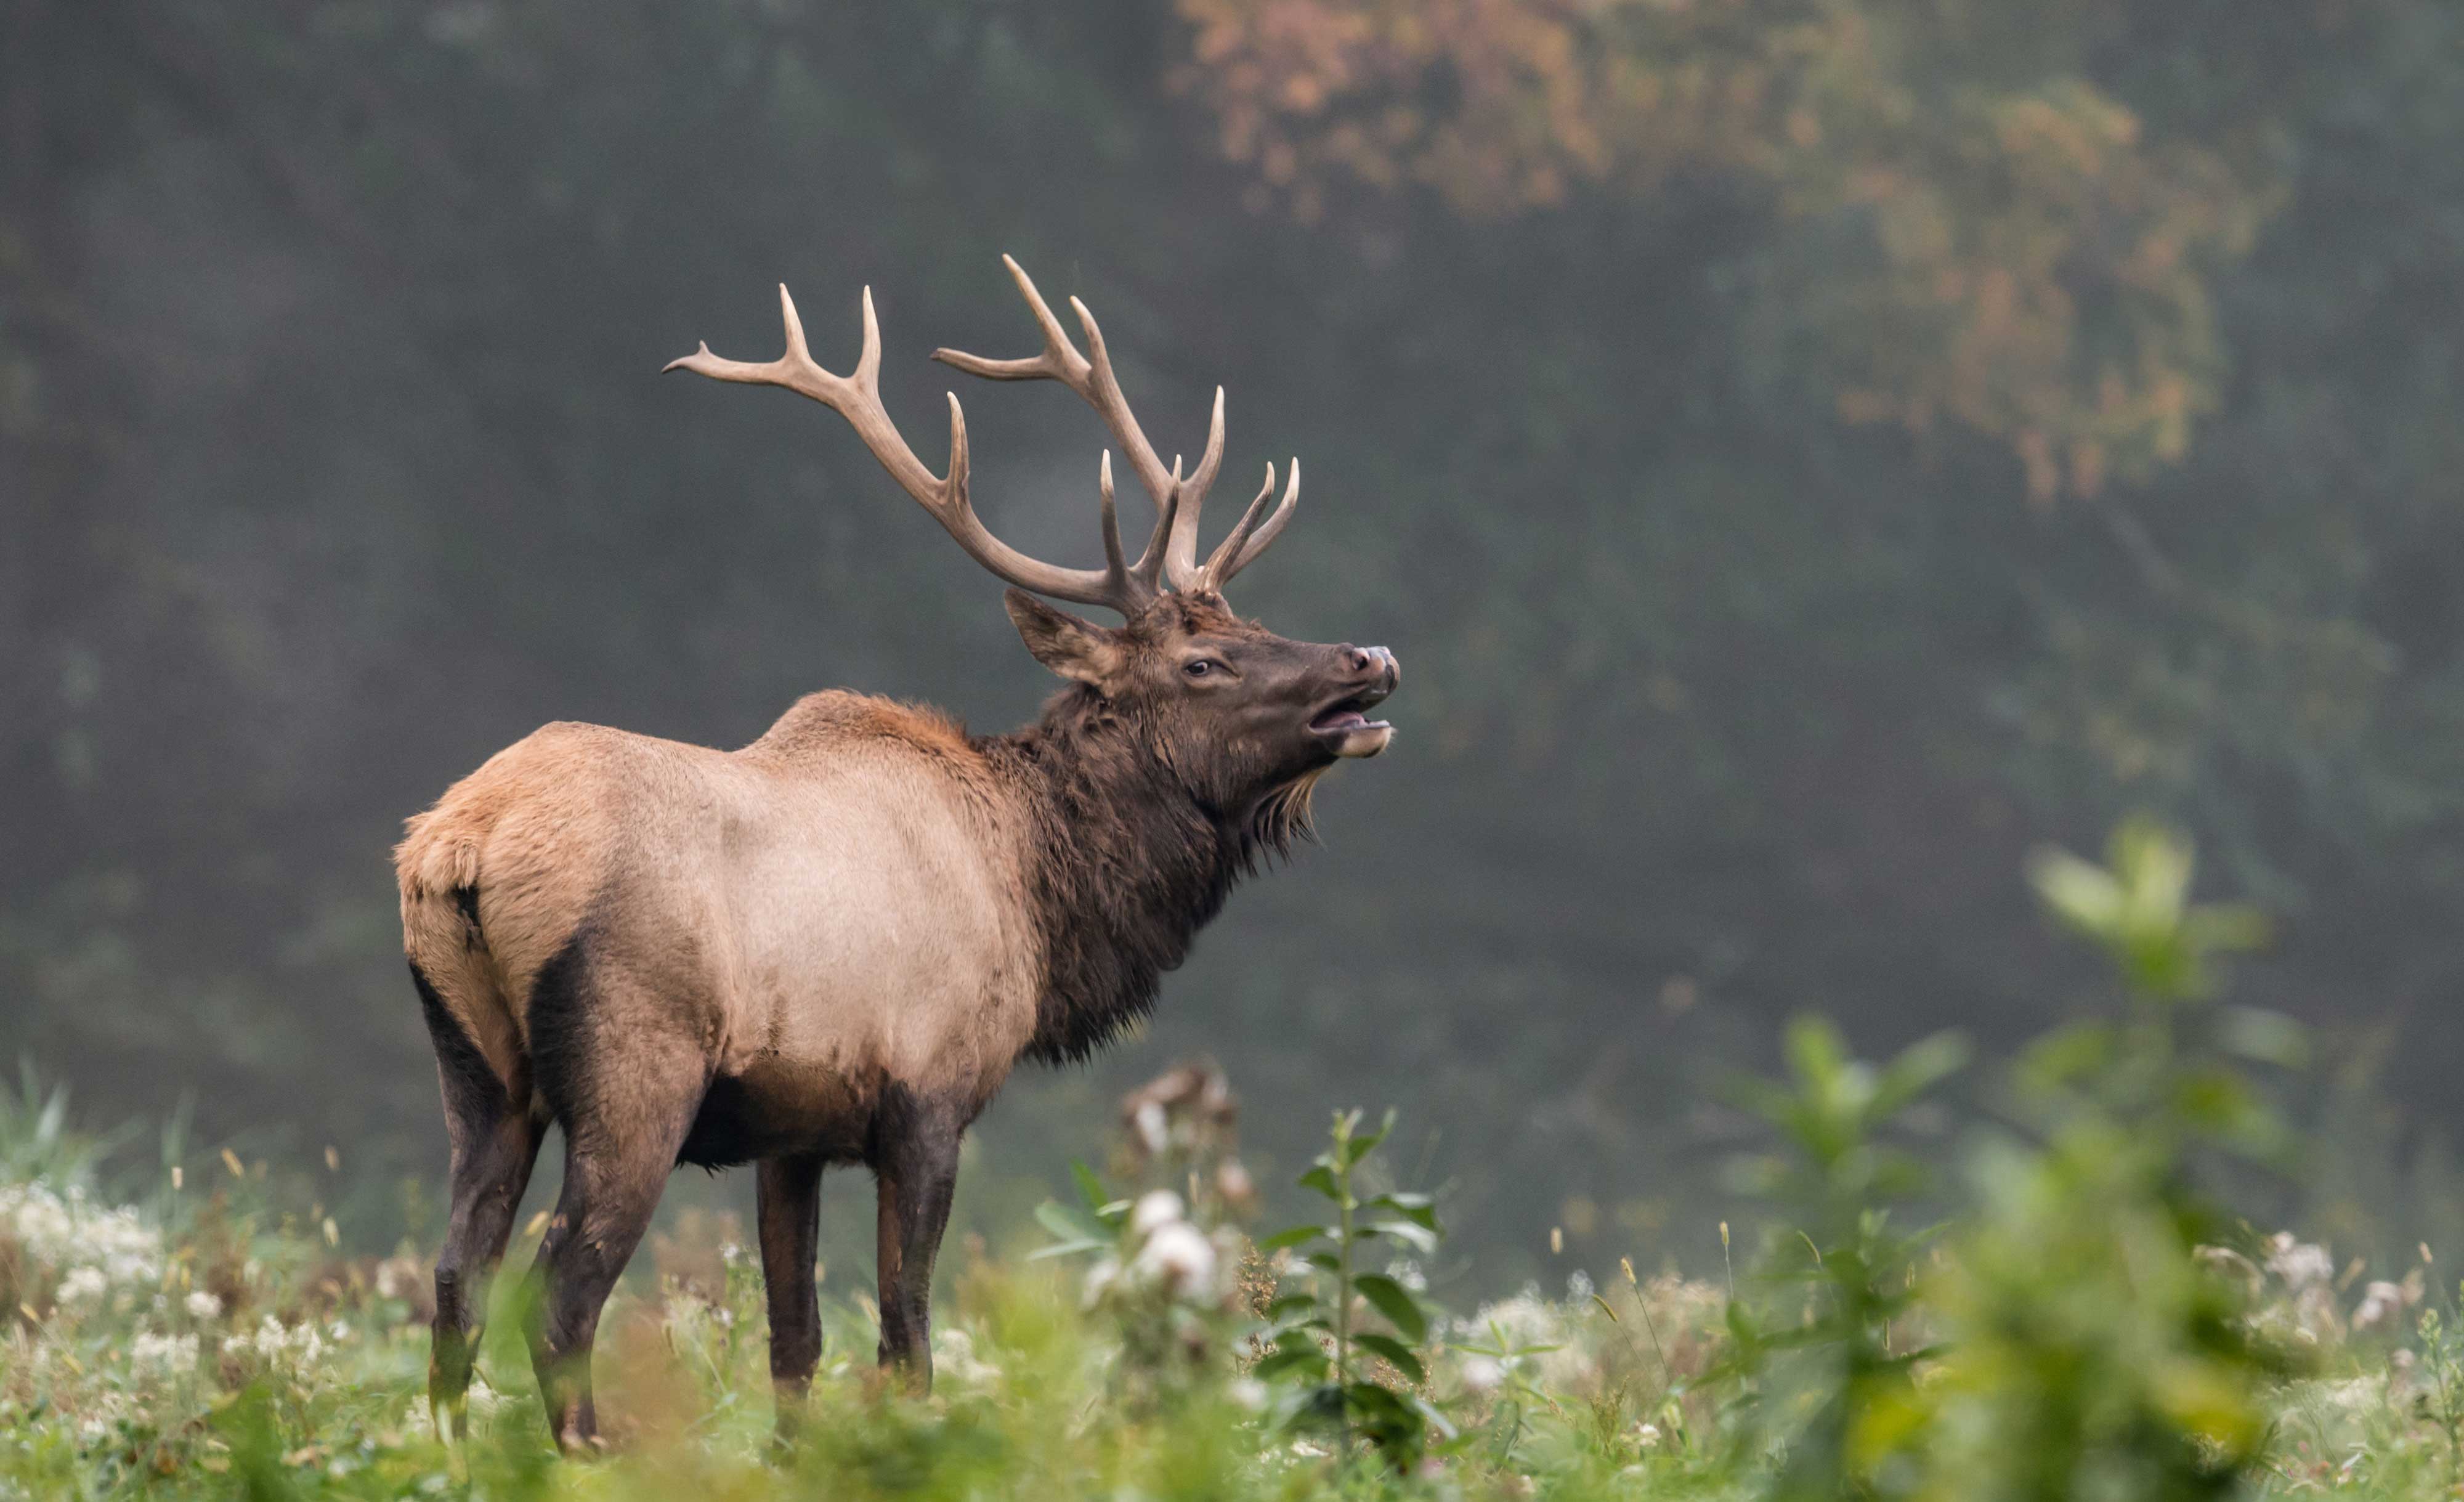 An elk in a field.